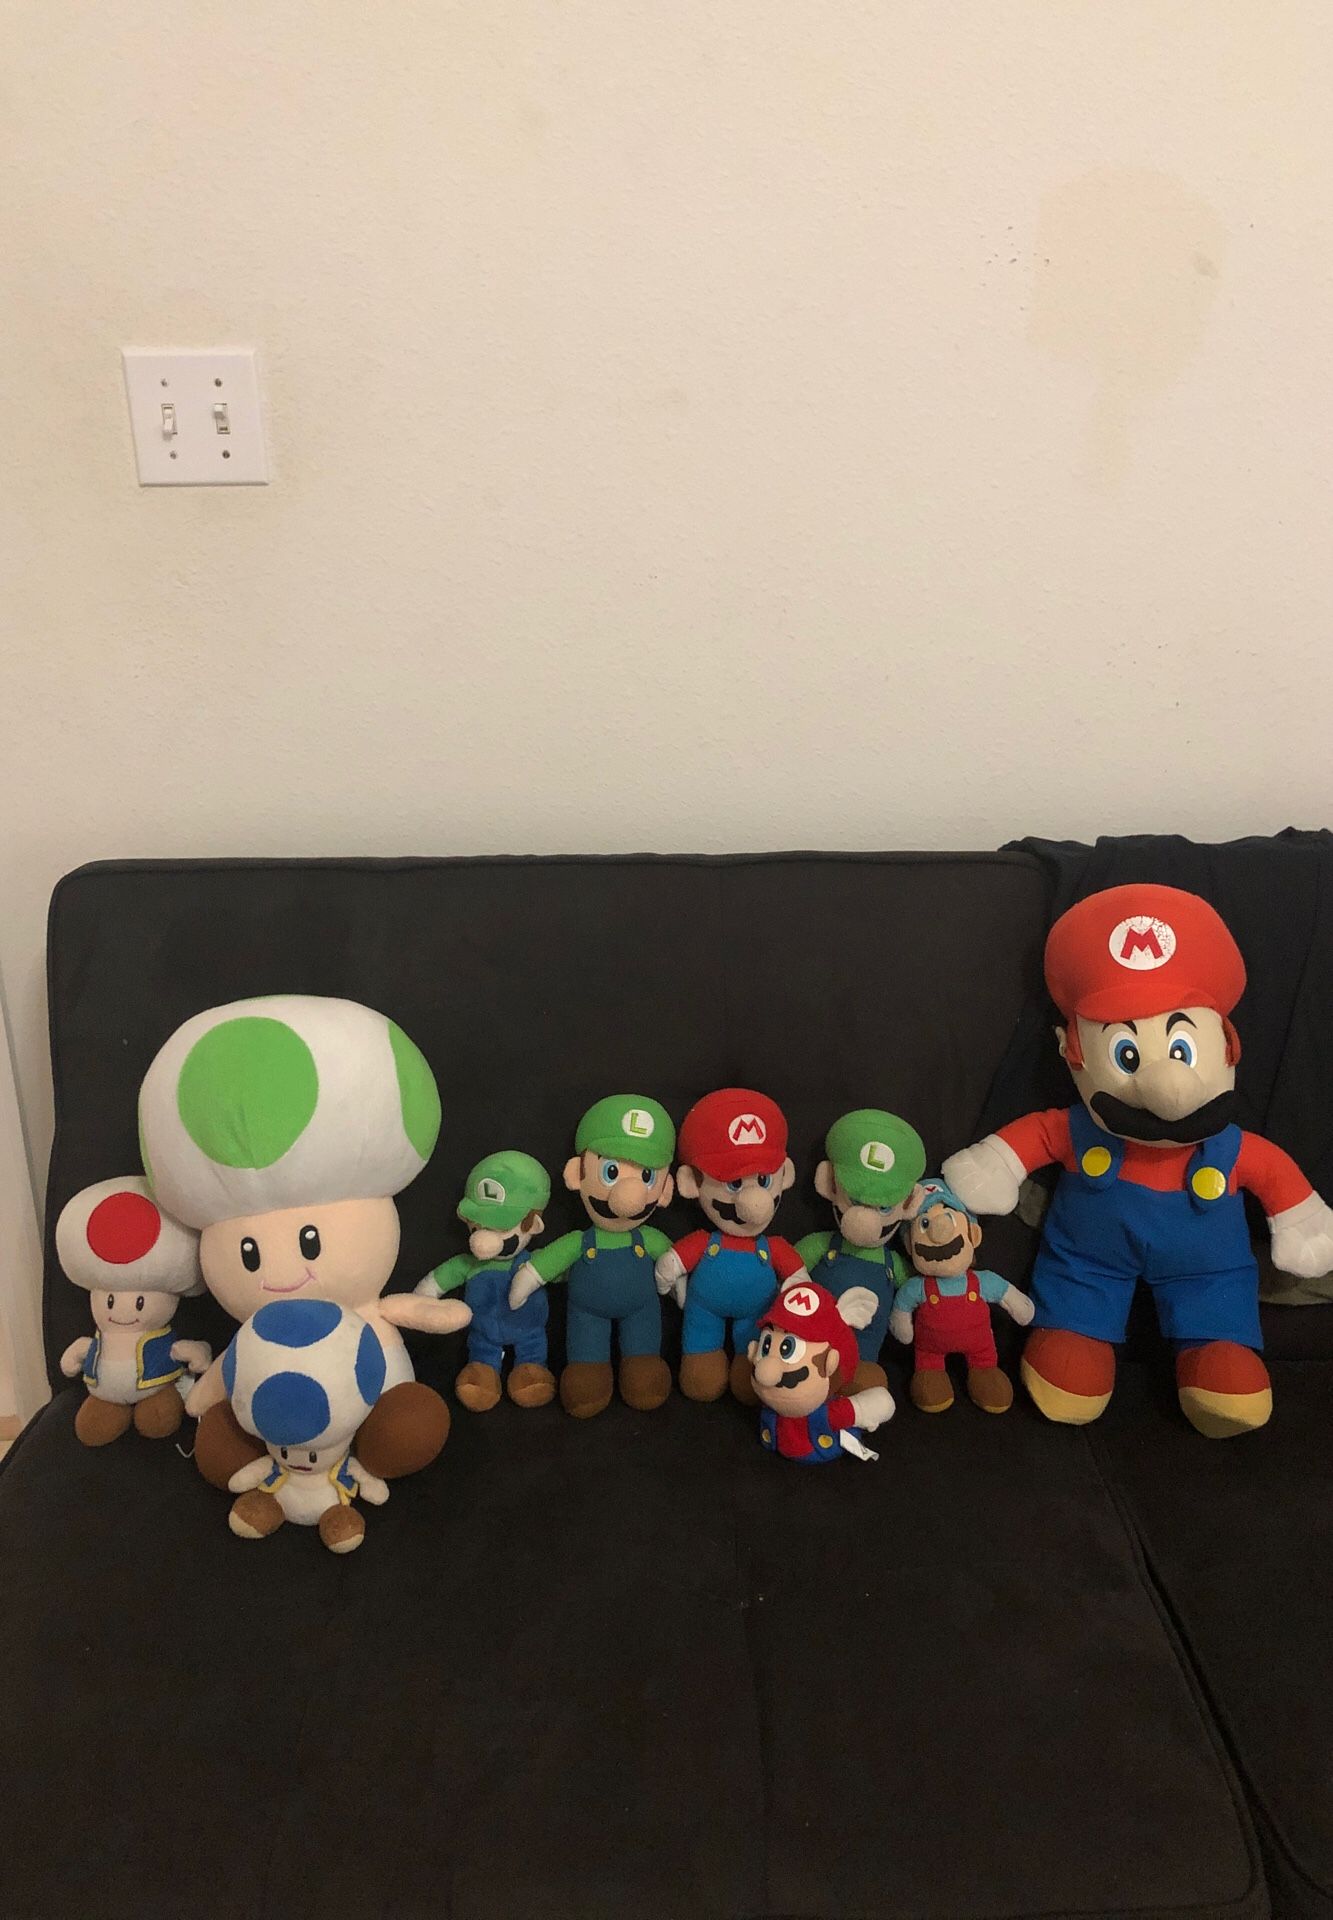 Super Mario plushies